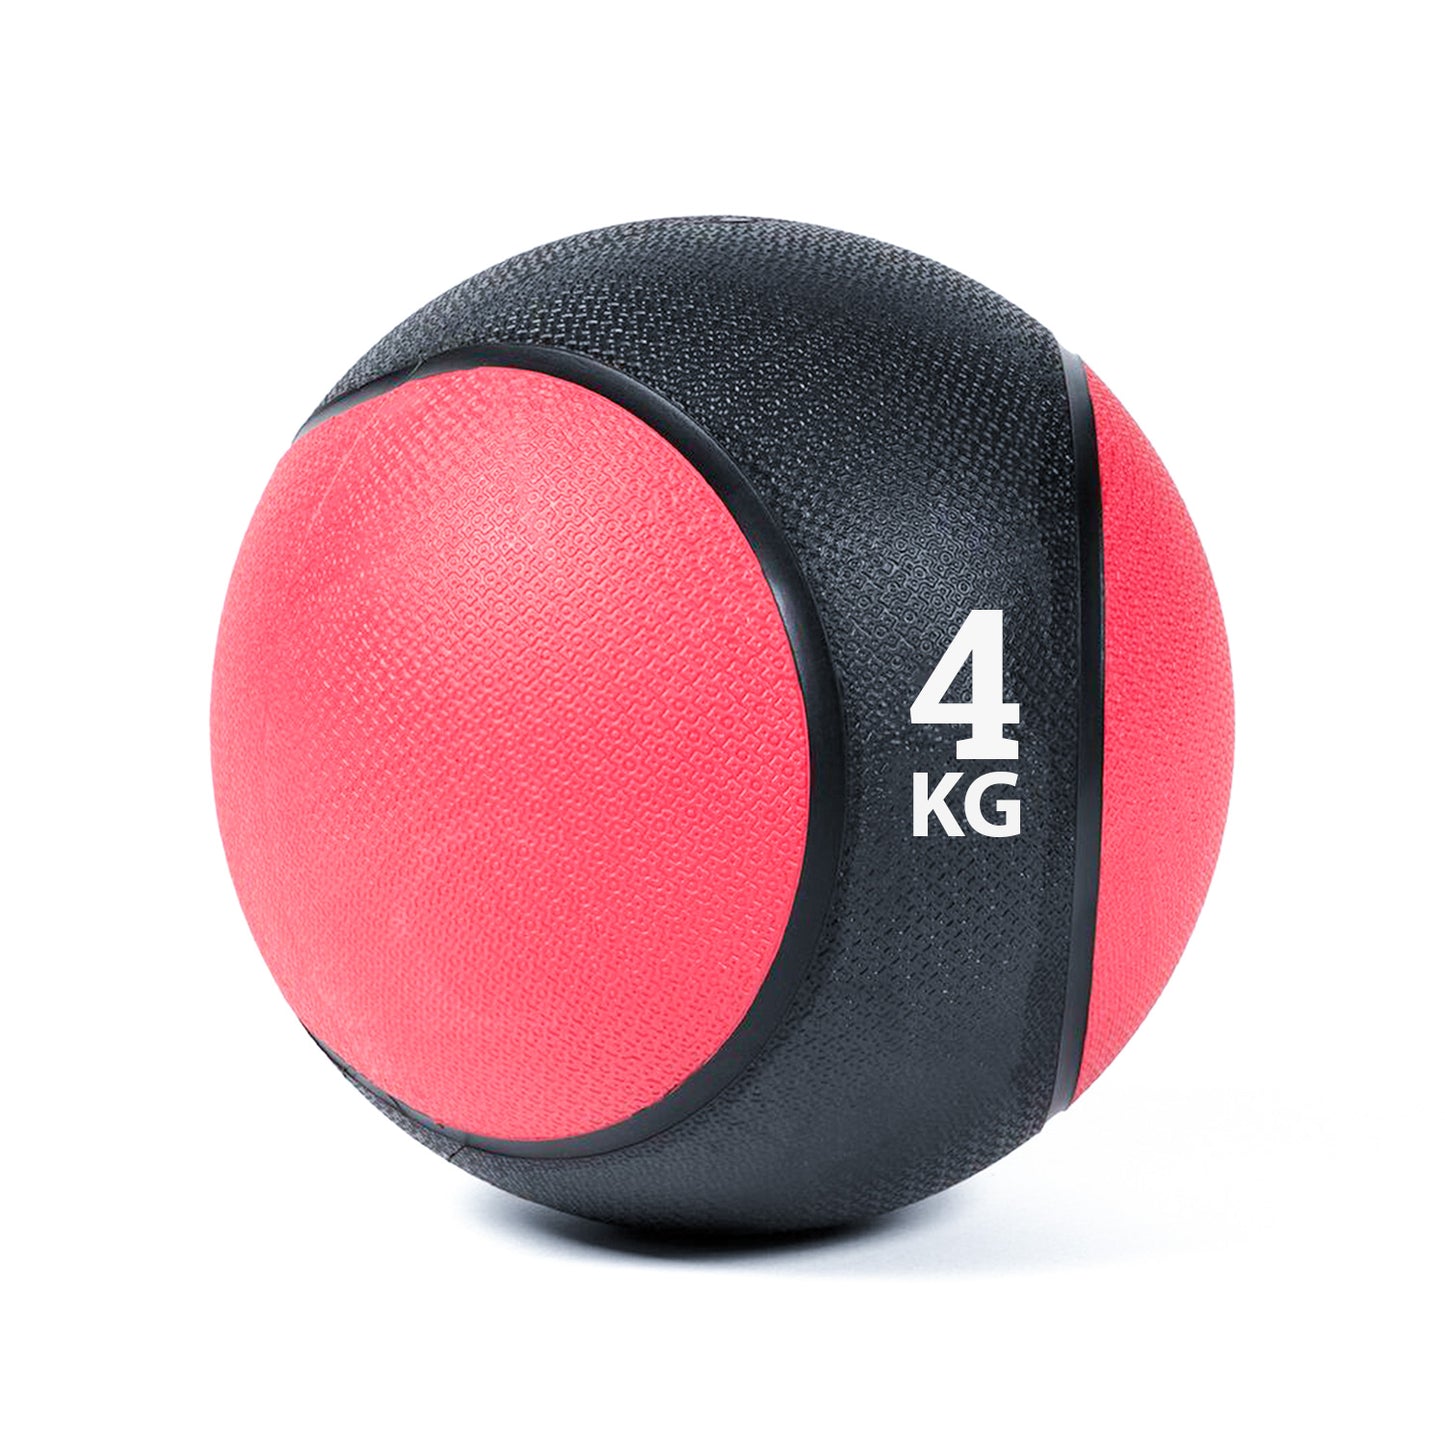 كرة طبية من المطاط لاعادة التأهيل و اللياقة البدنية - لون اسود و احمر - وزن 4 كيلو جرام